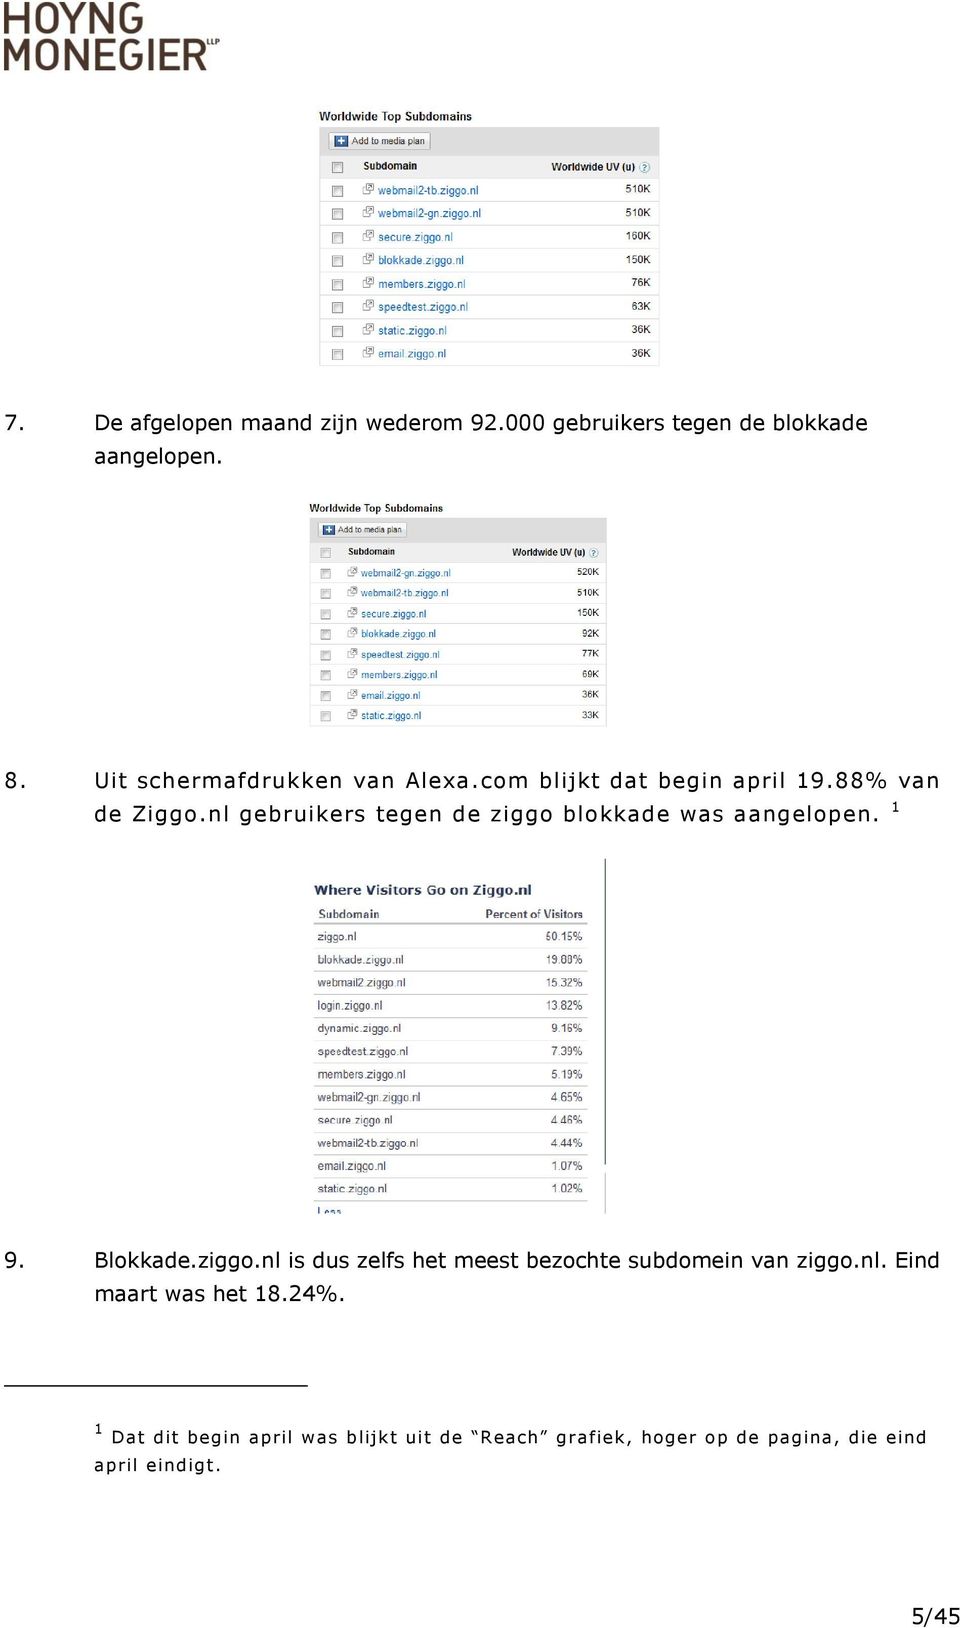 nl gebruikers tegen de ziggo blokkade was aangelopen. 1 9. Blokkade.ziggo.nl is dus zelfs het meest bezochte subdomein van ziggo.